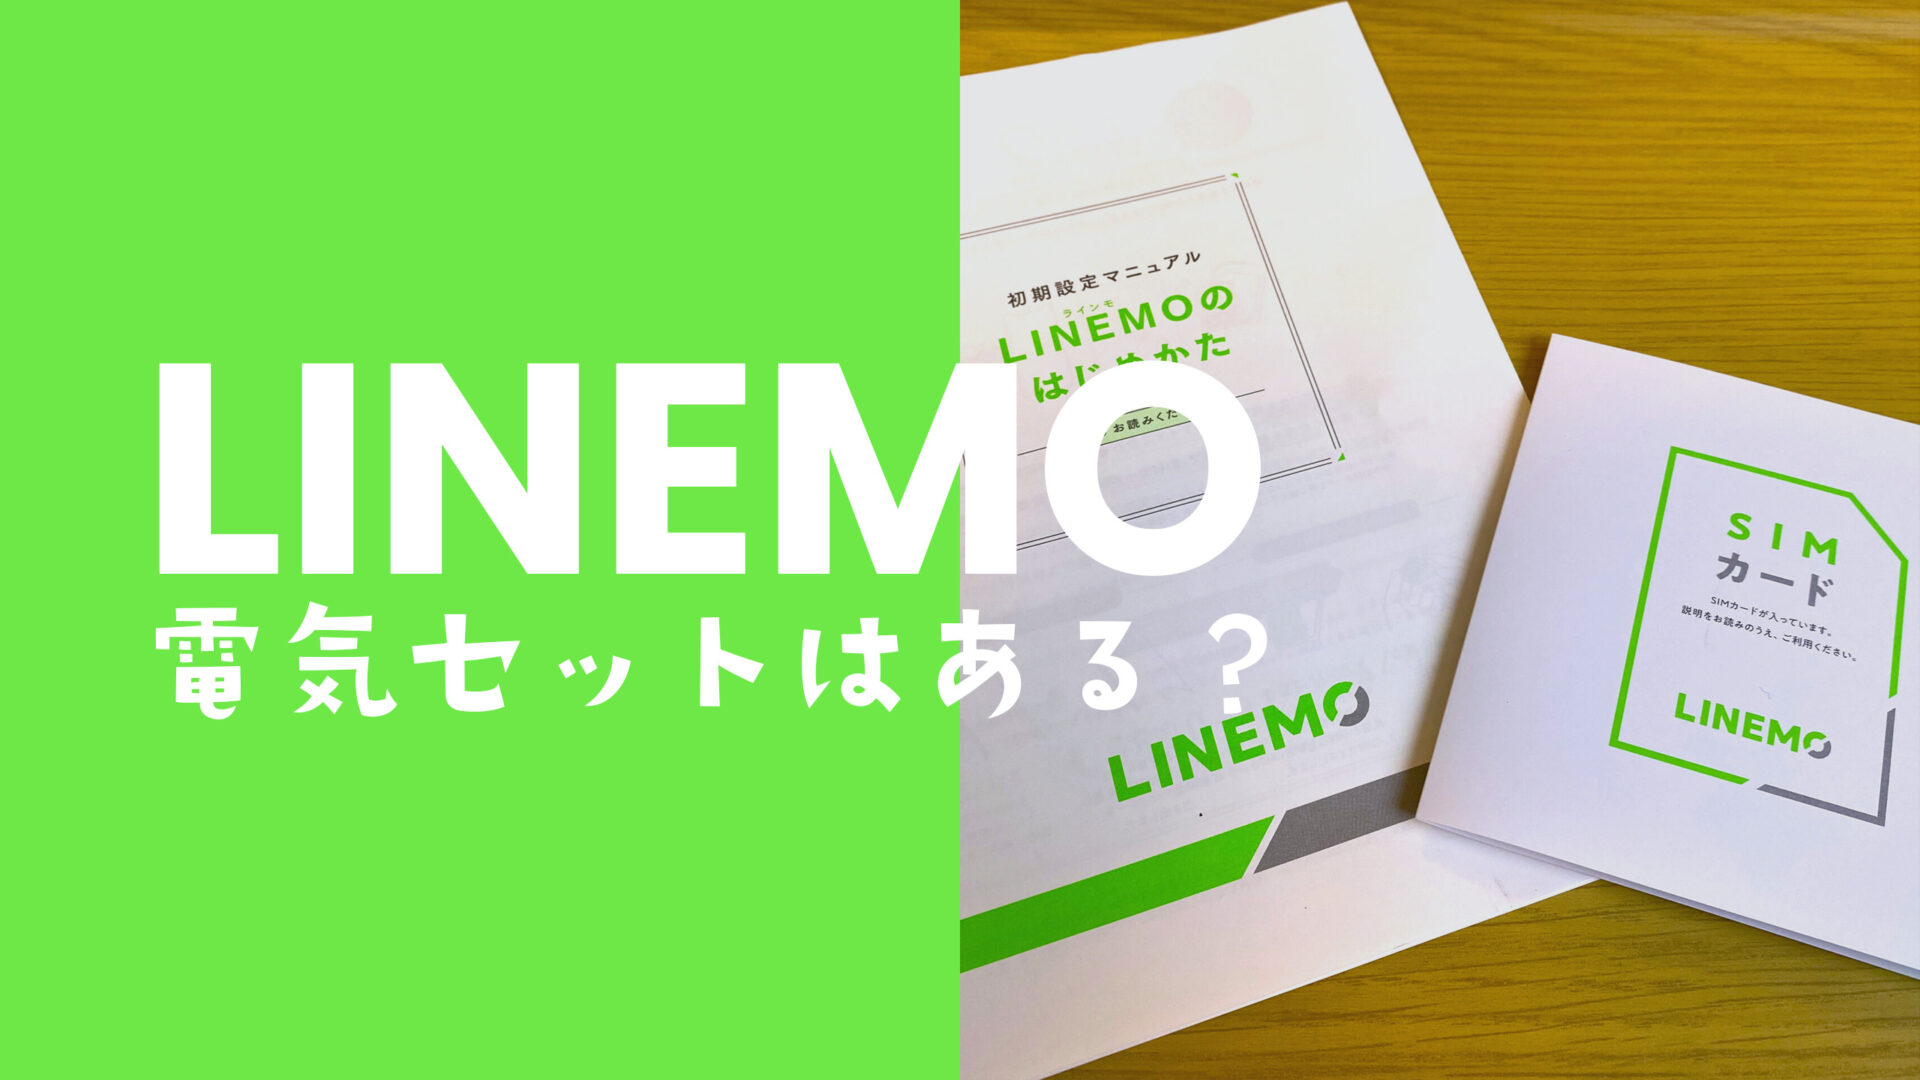 LINEMO(ラインモ)に電気セット割はない。ソフトバンクのおうちでんきは対象外。のサムネイル画像